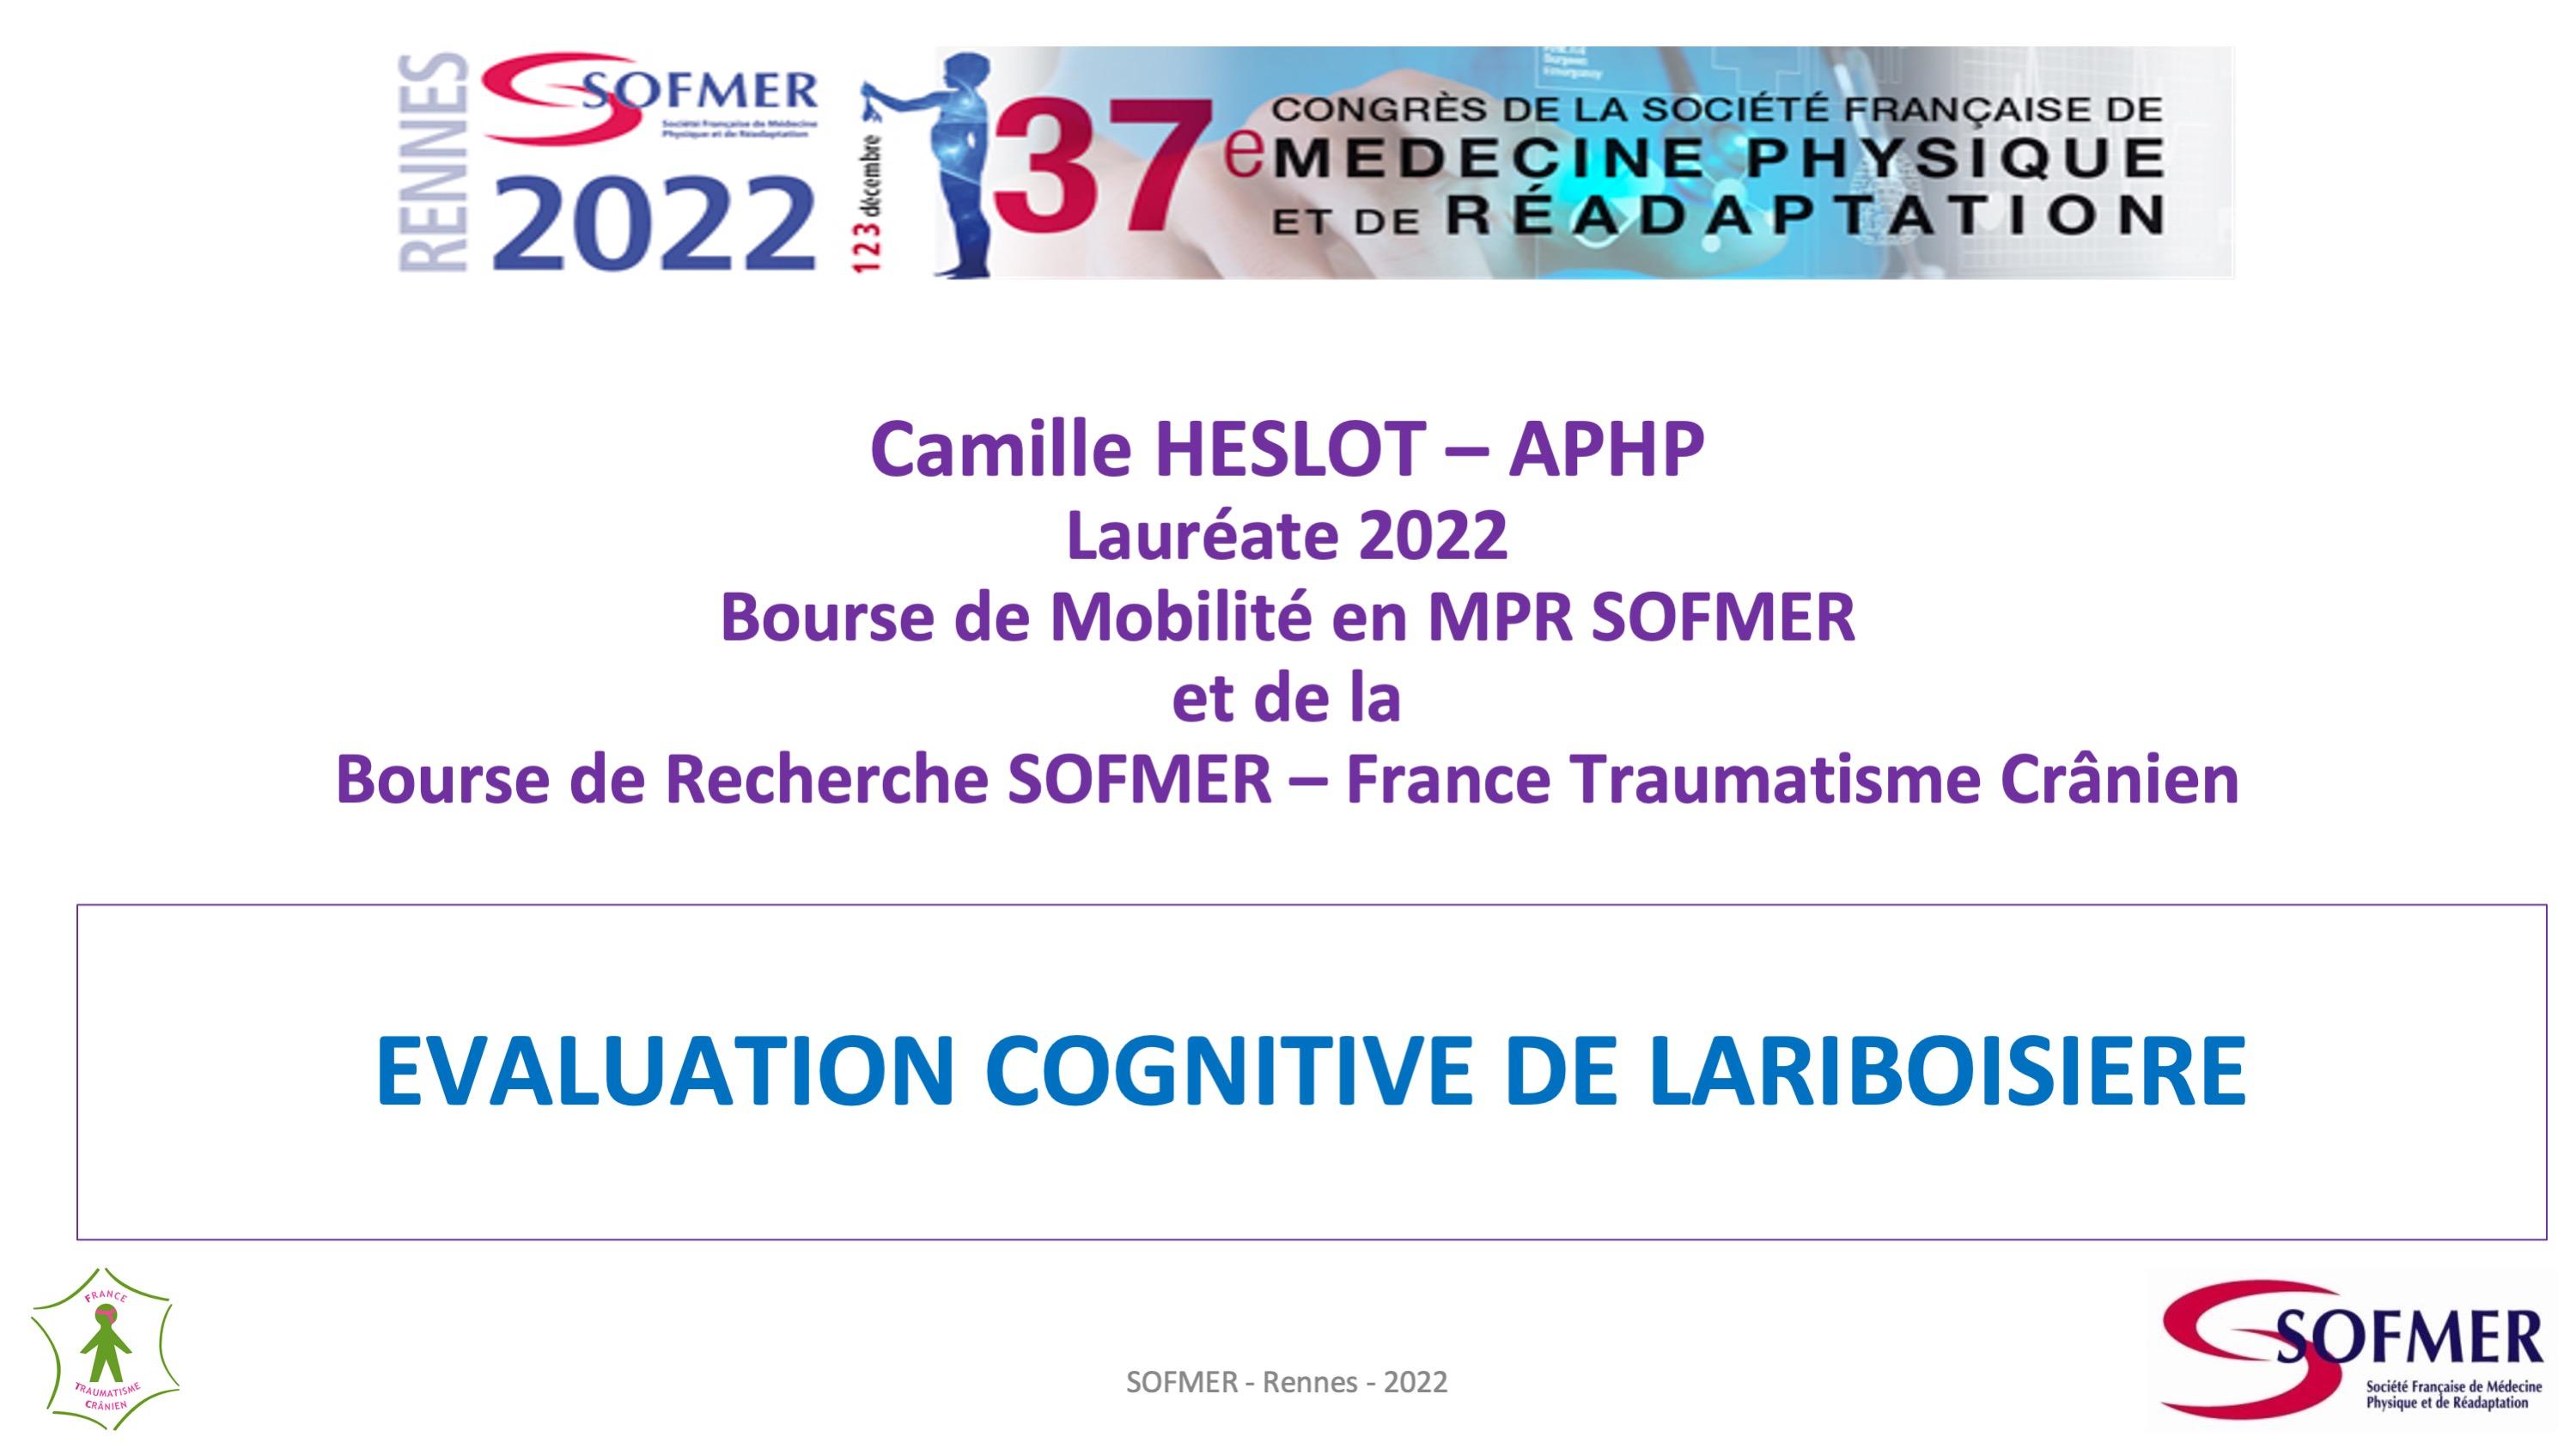 Bourse de Mobilité SOFMER - Lauréat 2022 - Camille HESLOT 